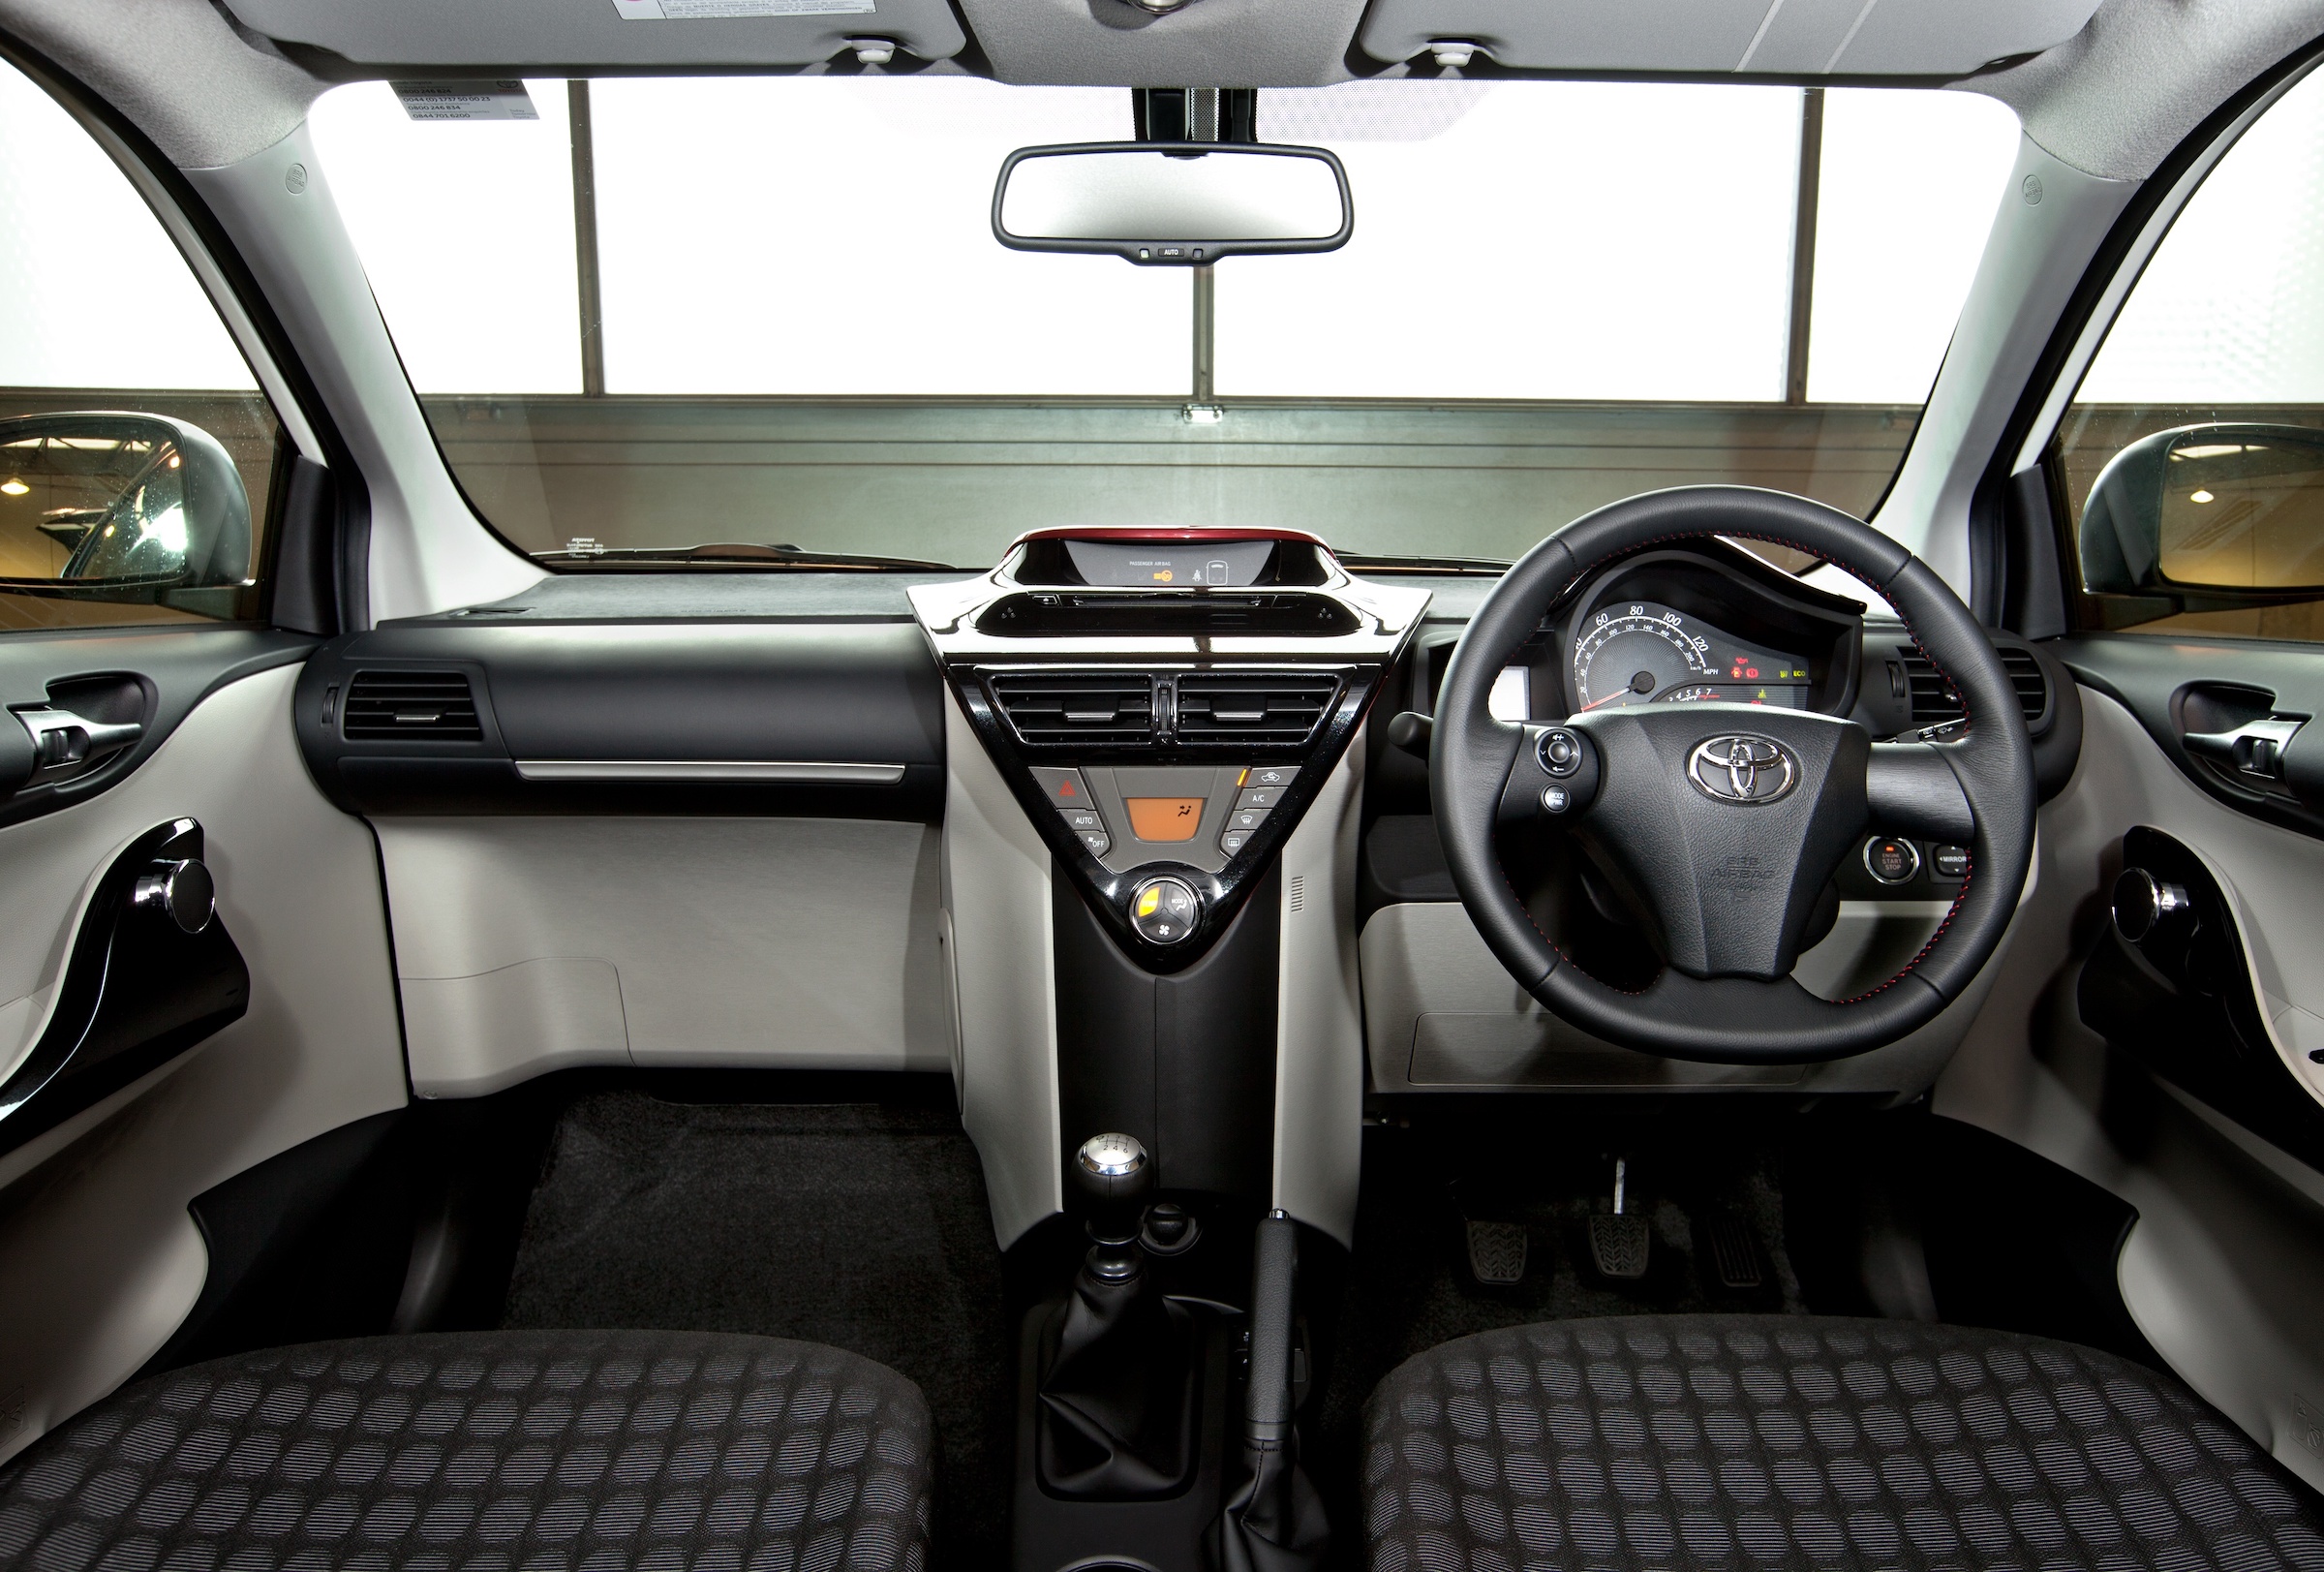 Toyota iQ interior